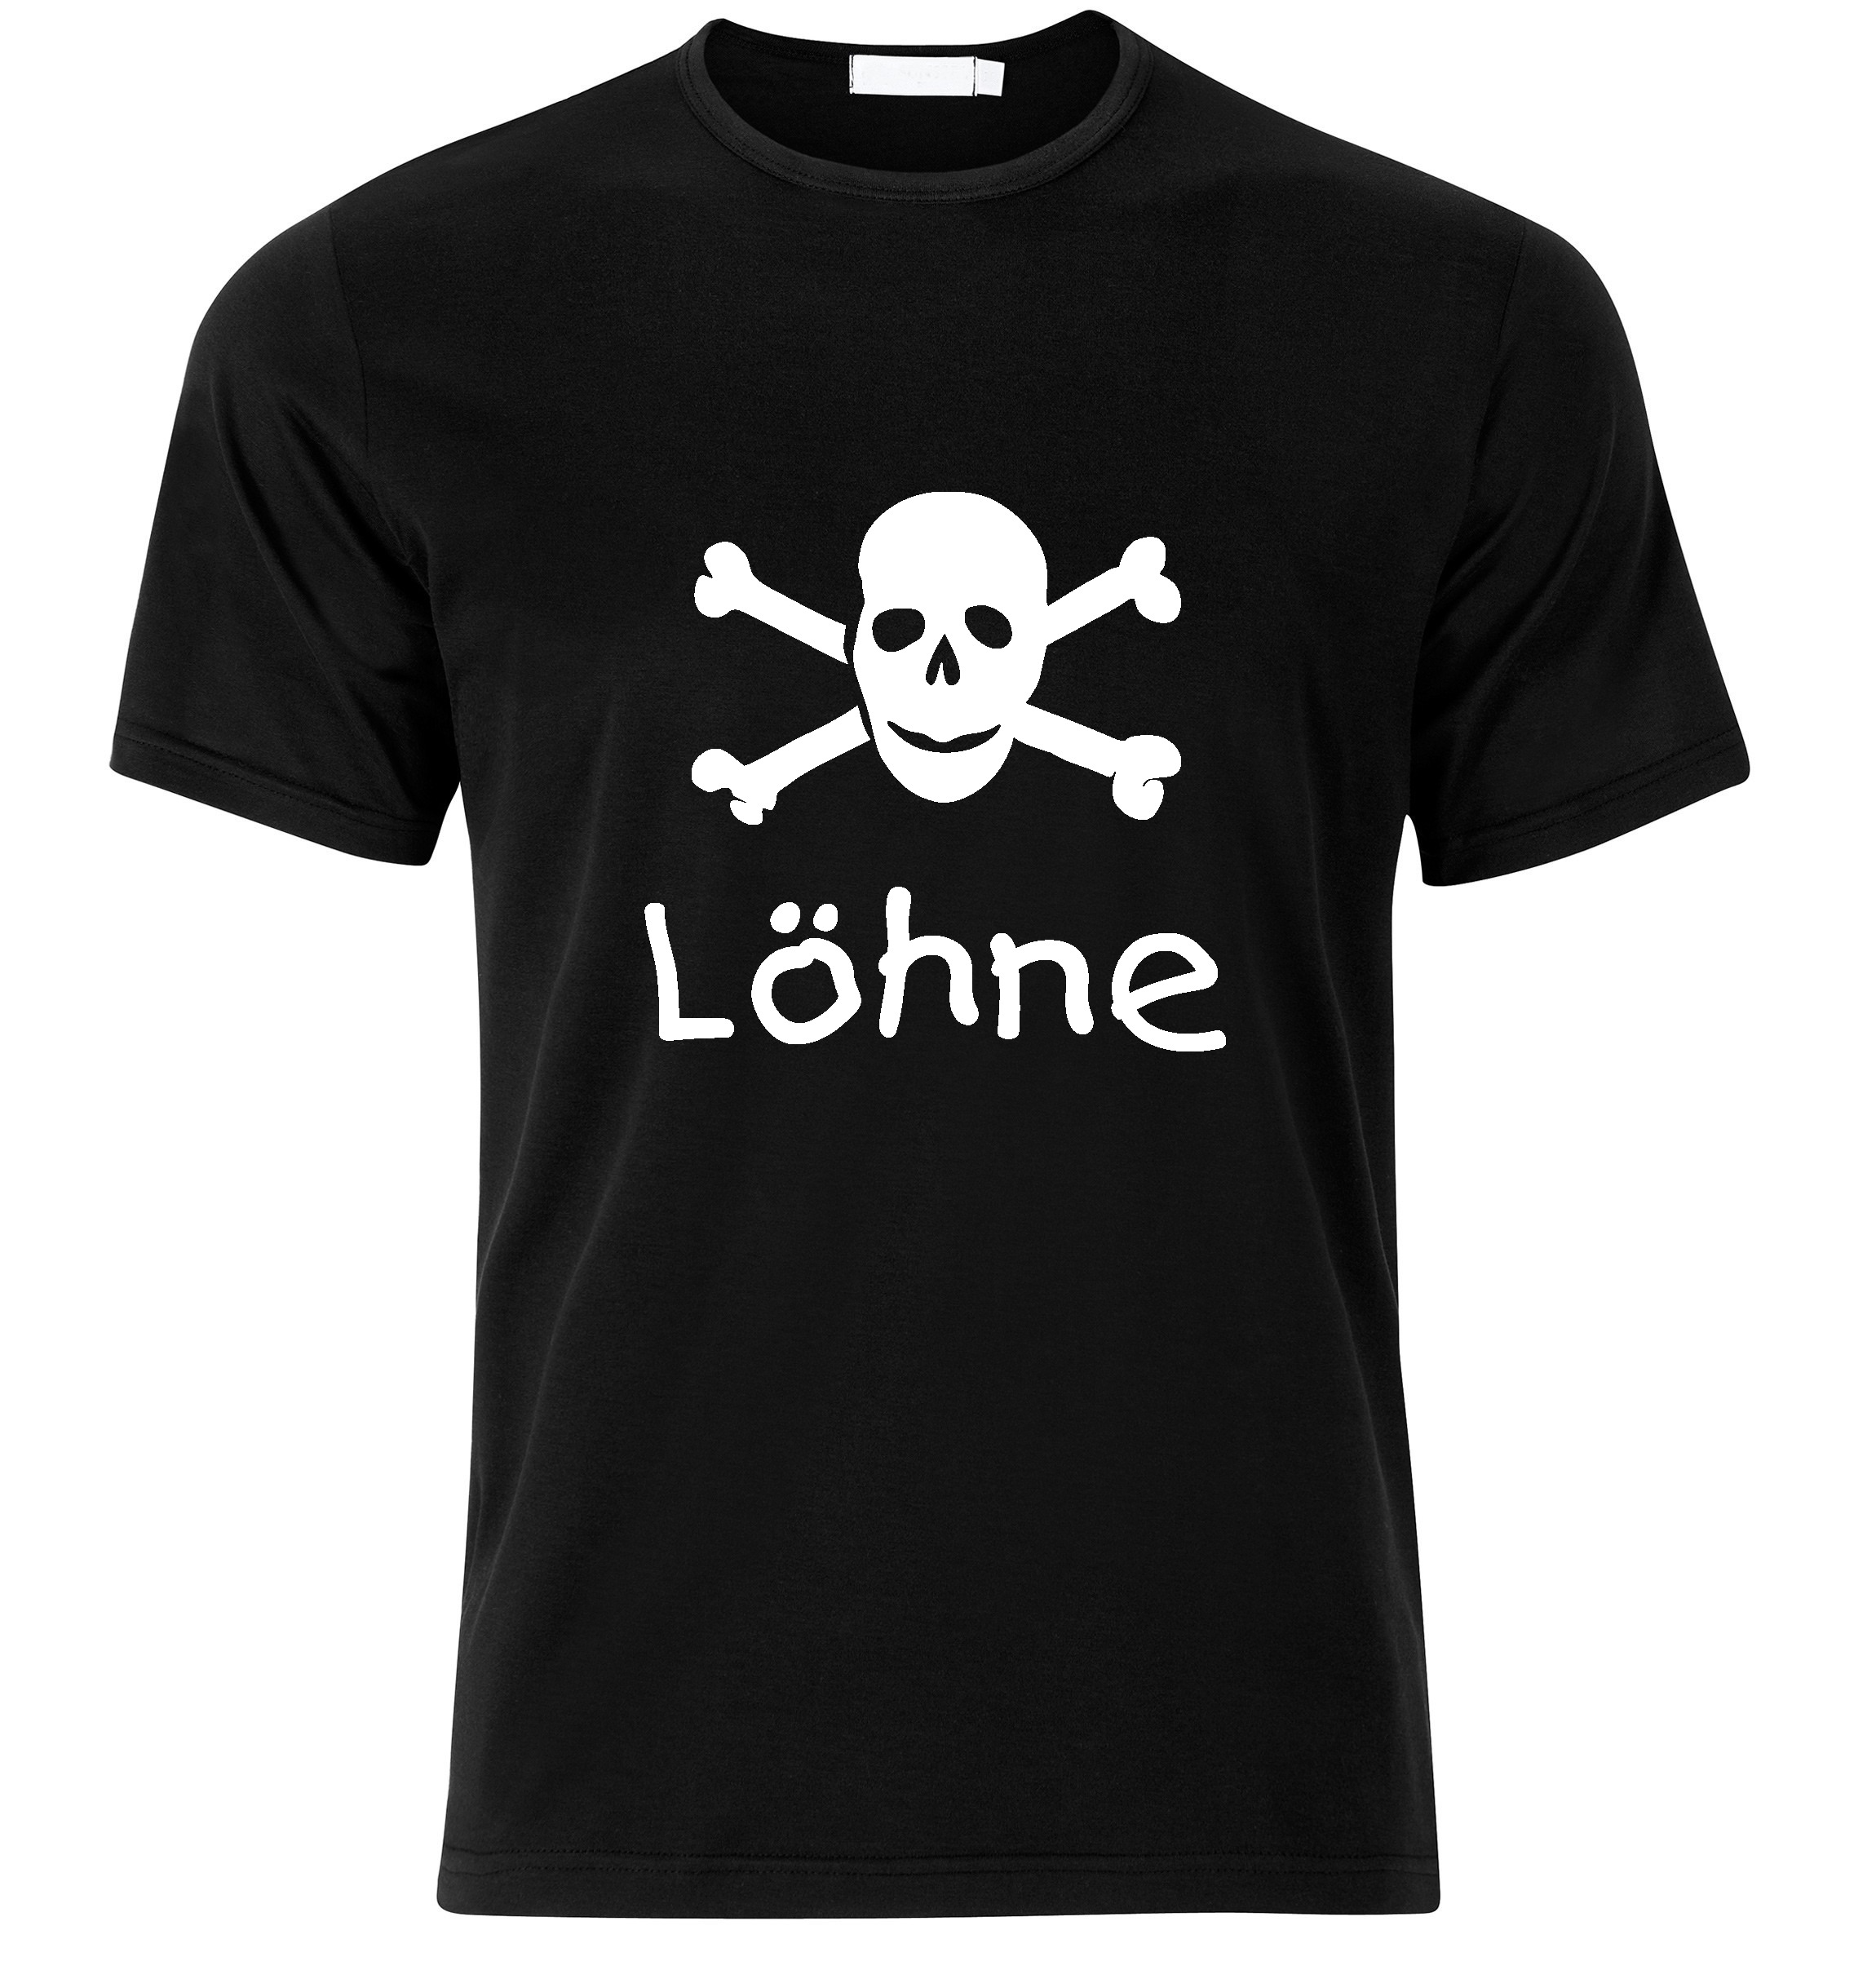 T-Shirt Löhne Jolly Roger, Totenkopf